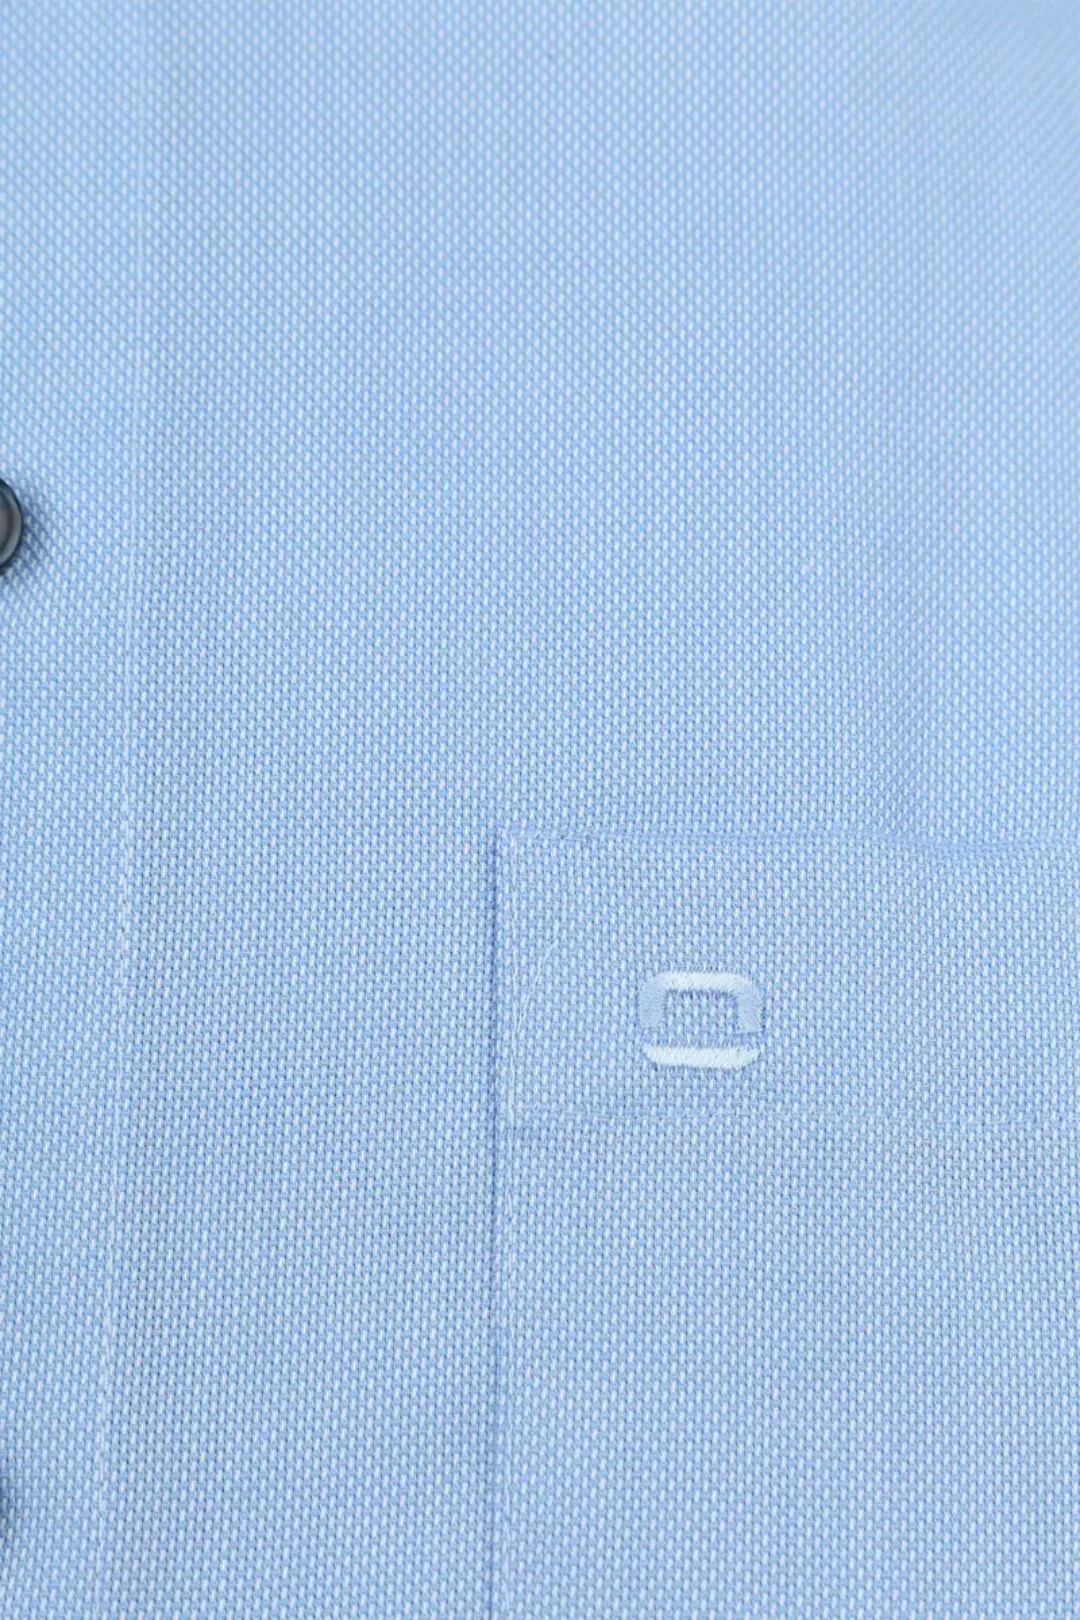 OLYMP Luxor Hemd Hellblau  - Größe 39 günstig online kaufen